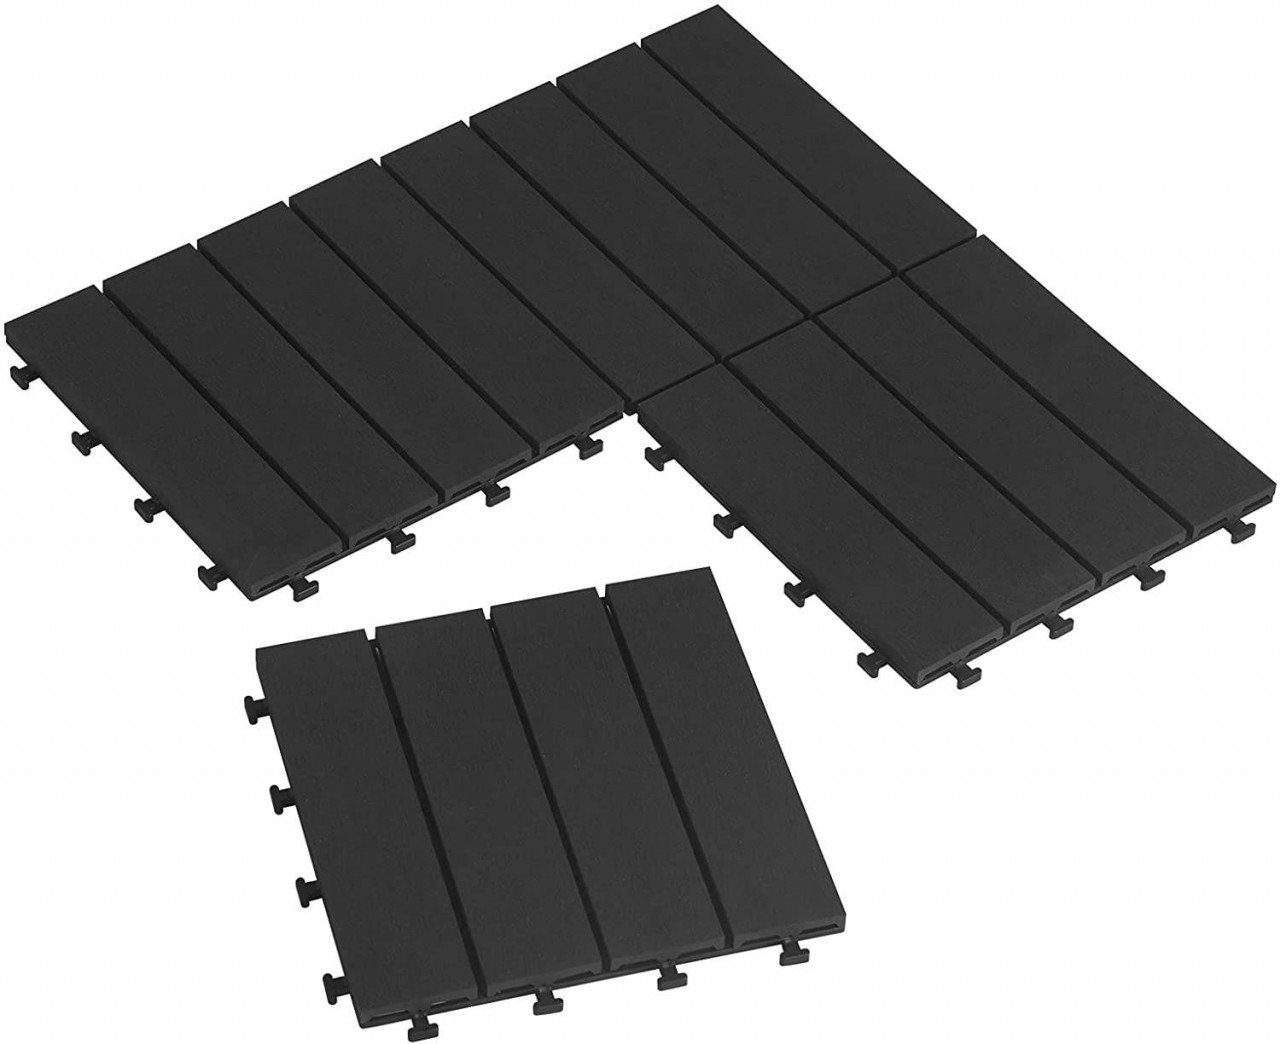 12 Stück / 2 m² Terrassendielen Holz-Optik 30x60cm EUGAD Terrassenfliesen Klickfliese WPC Bodenbelag Braun Fliese Bodenfliese mit klicksystem,Einfach zu installieren